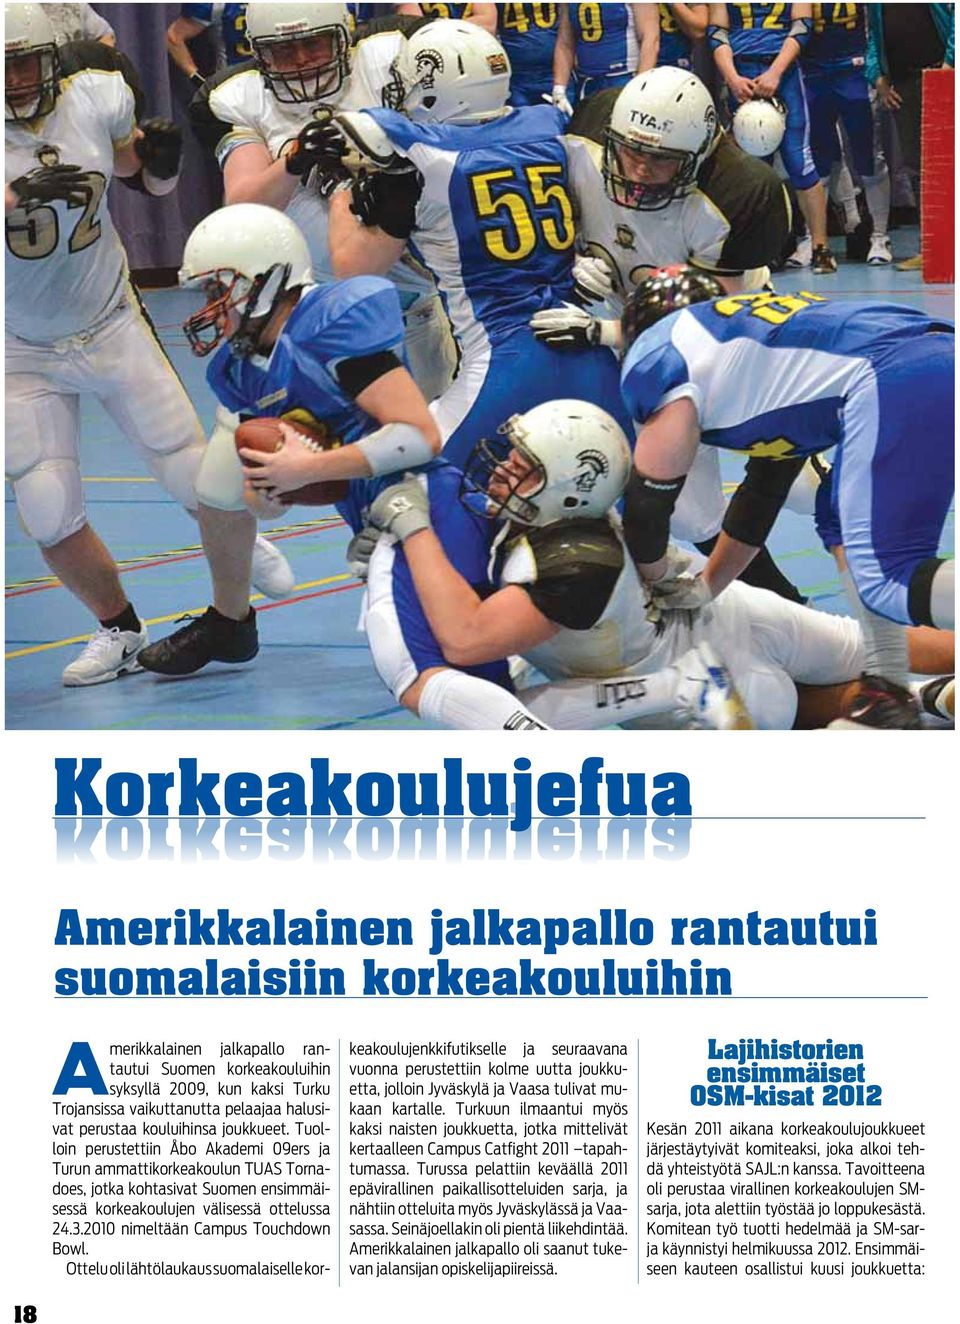 Tuolloin perustettiin Åbo Akademi 09ers ja Turun ammattikorkeakoulun TUAS Tornadoes, jotka kohtasivat Suomen ensimmäisessä korkeakoulujen välisessä ottelussa 24.3.2010 nimeltään Campus Touchdown Bowl.